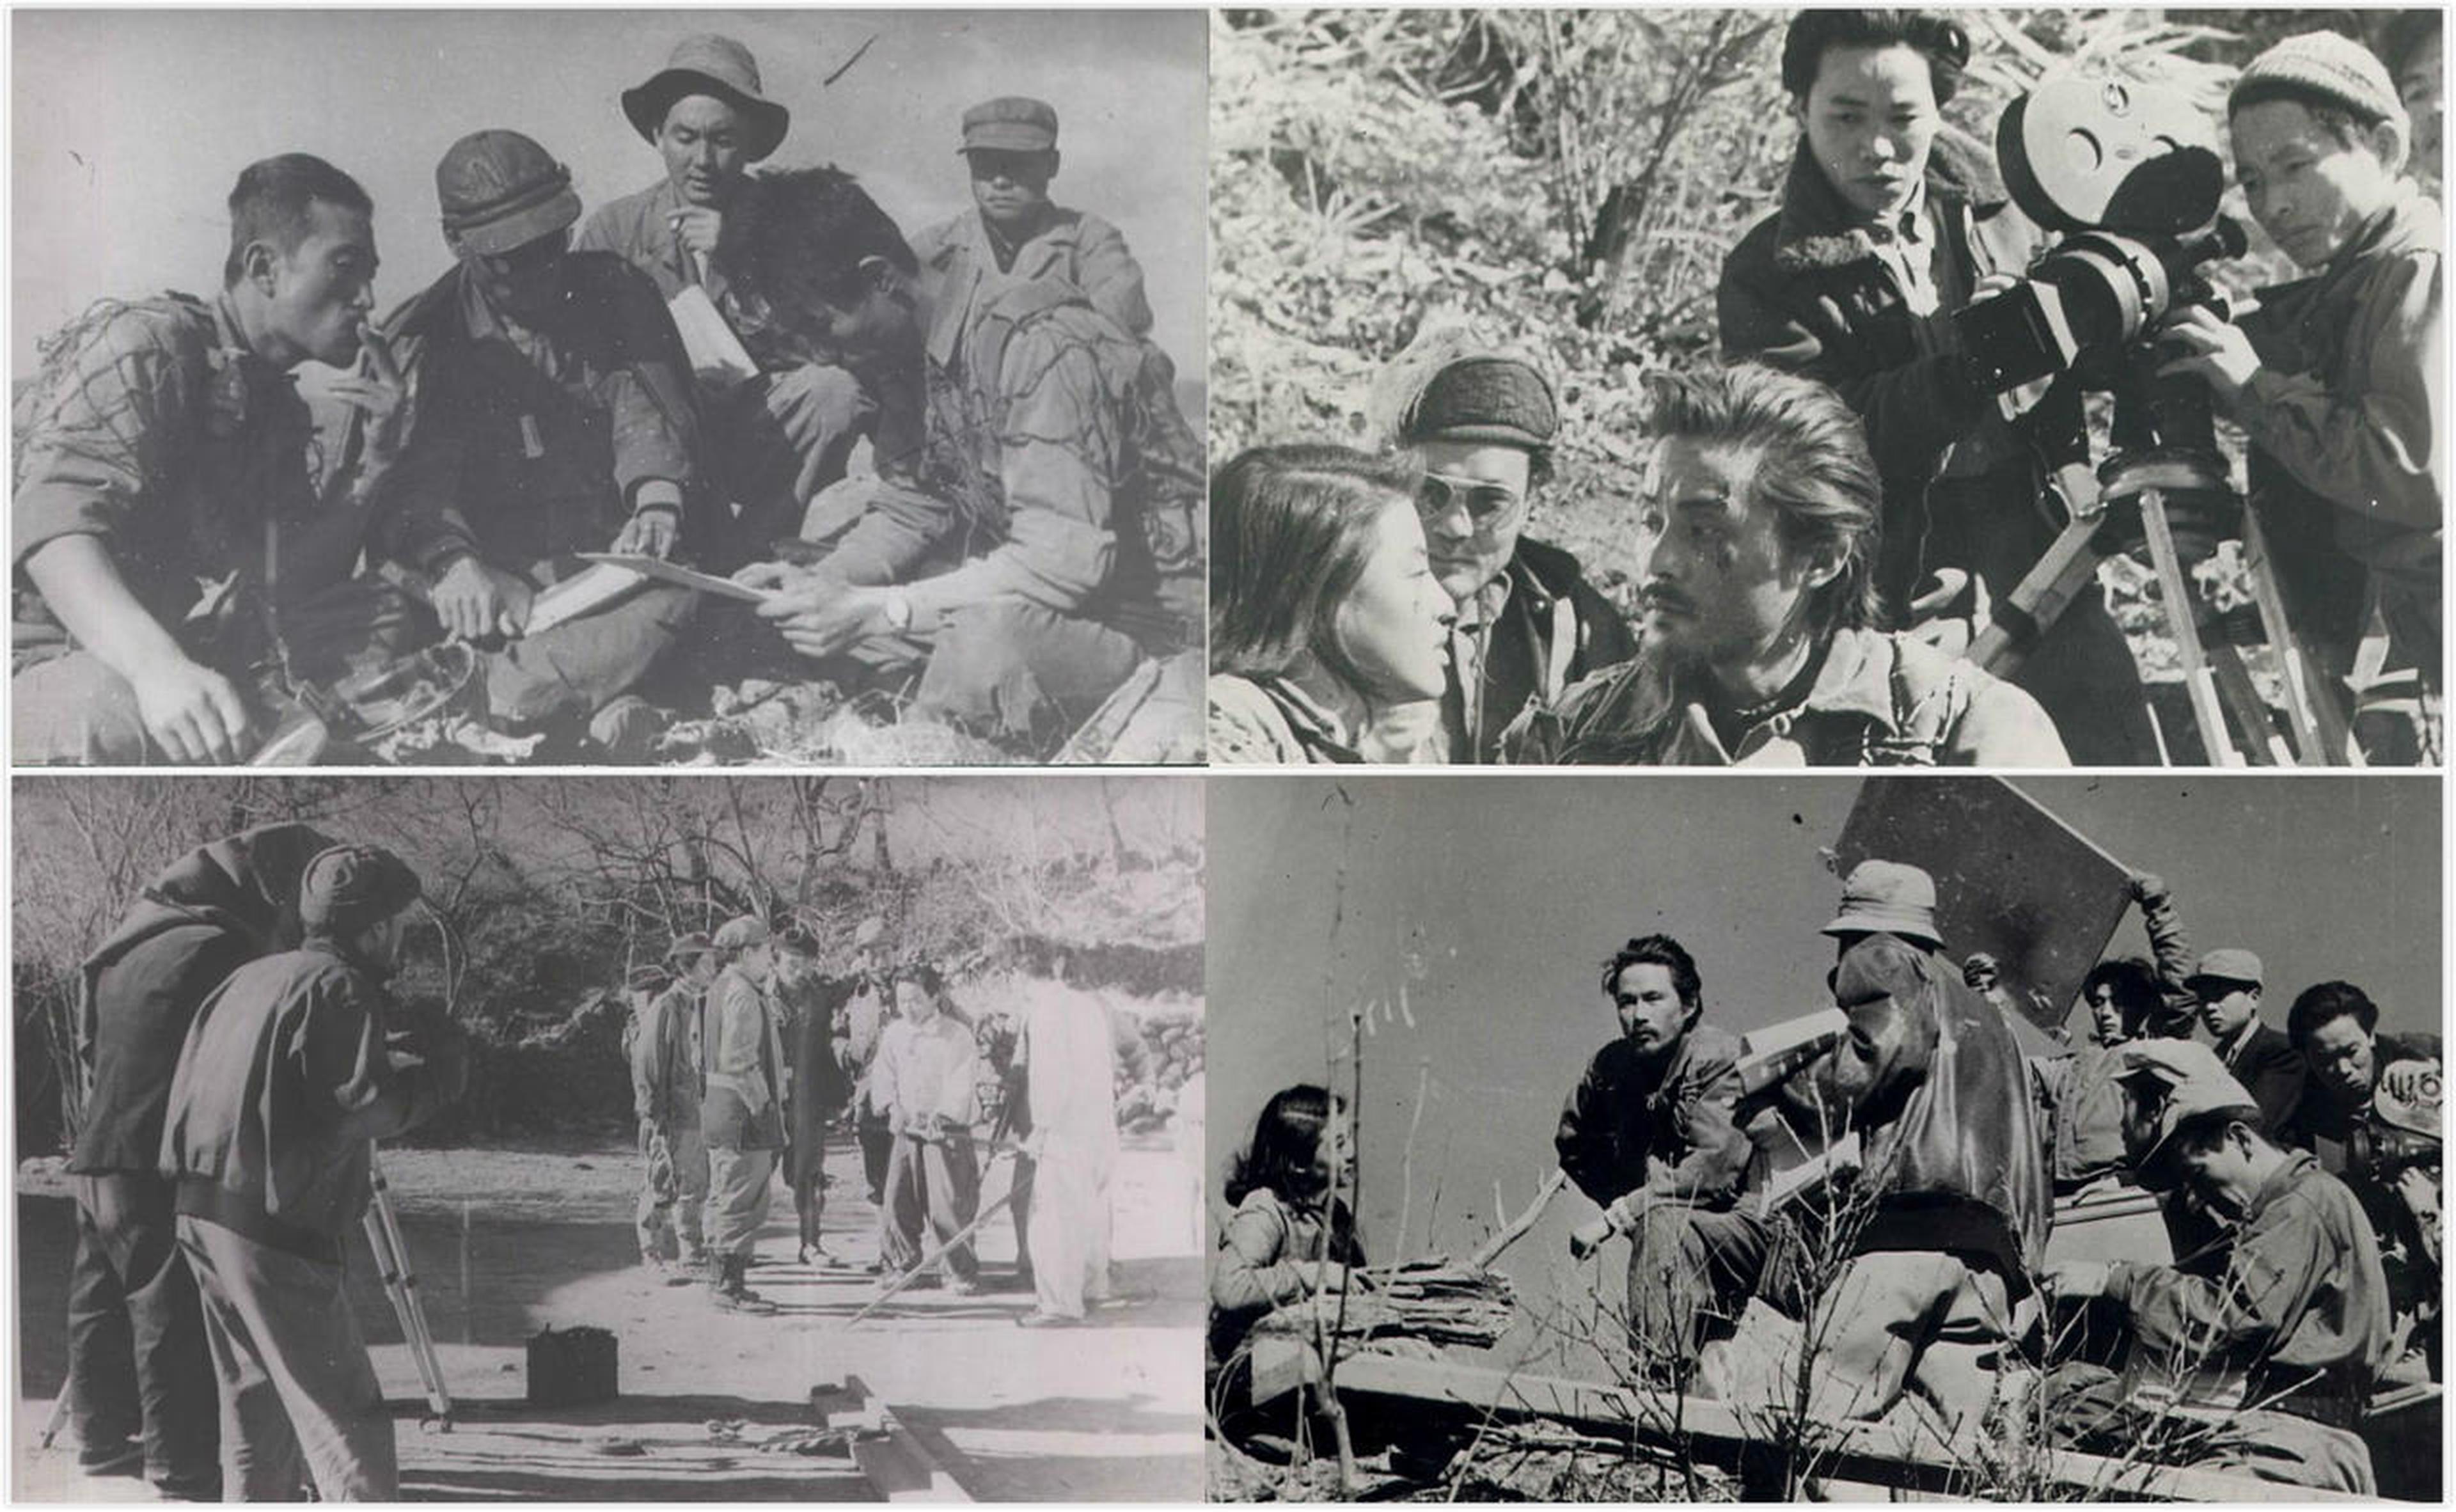 【1950-1960】《稗牙谷》 (1955) 导演李康天。影片聚焦朝鲜战争休战时期的志异山驻扎游击部队，讲述了一个桃色案件引起了原本就矛盾重重的小团体的崩溃，由于正面描写了游击队员形象，违反了当时的“反共法”，一度成为禁映作品。